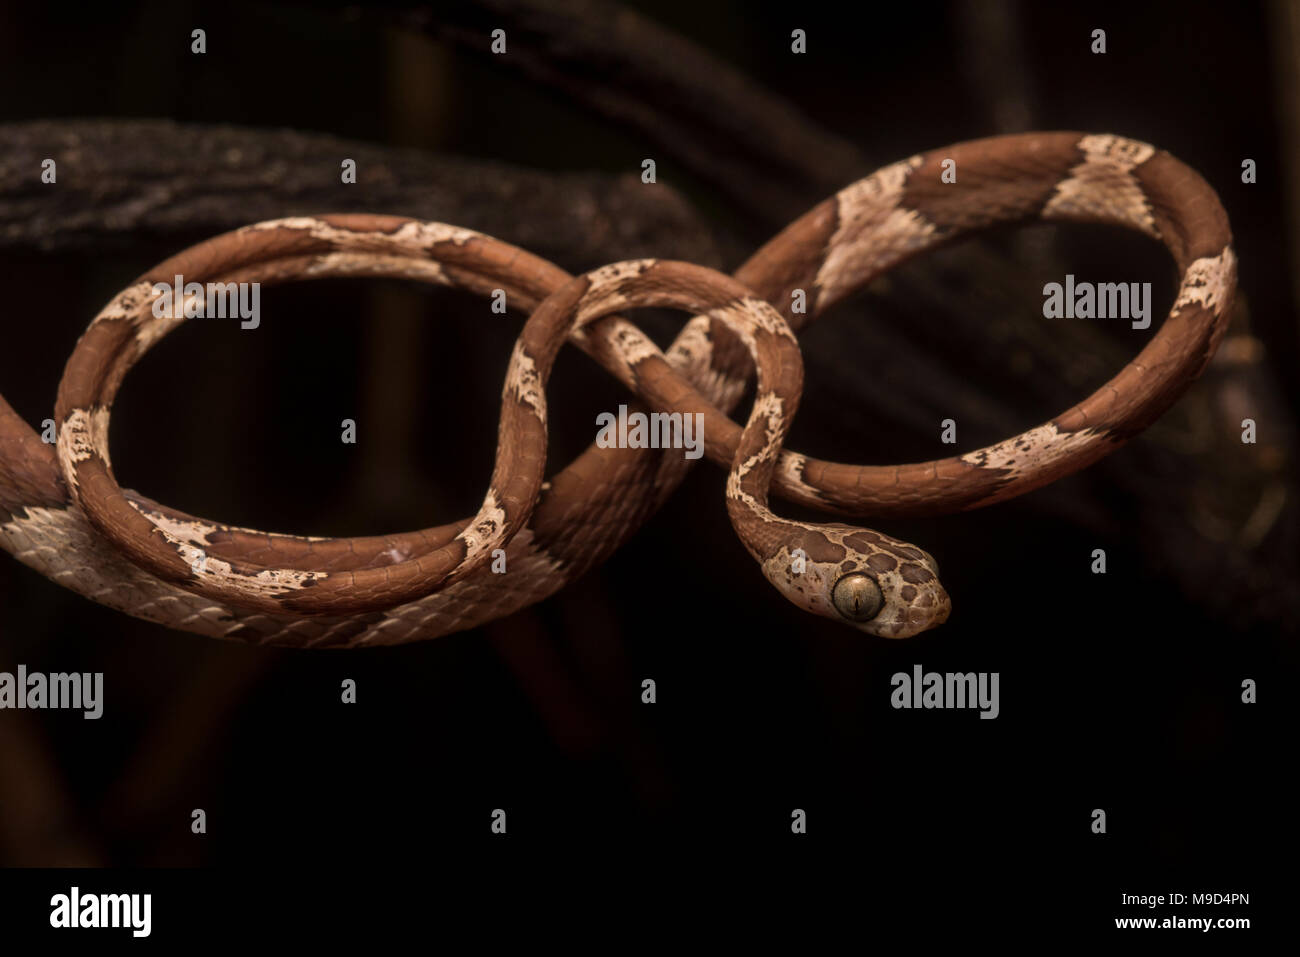 Eine stumpfe Kopf tree snake (Imantodes cenchoa) stellt natürlich in der gleichen Form als Abbildung 8 oder unendlich Loop. Stockfoto